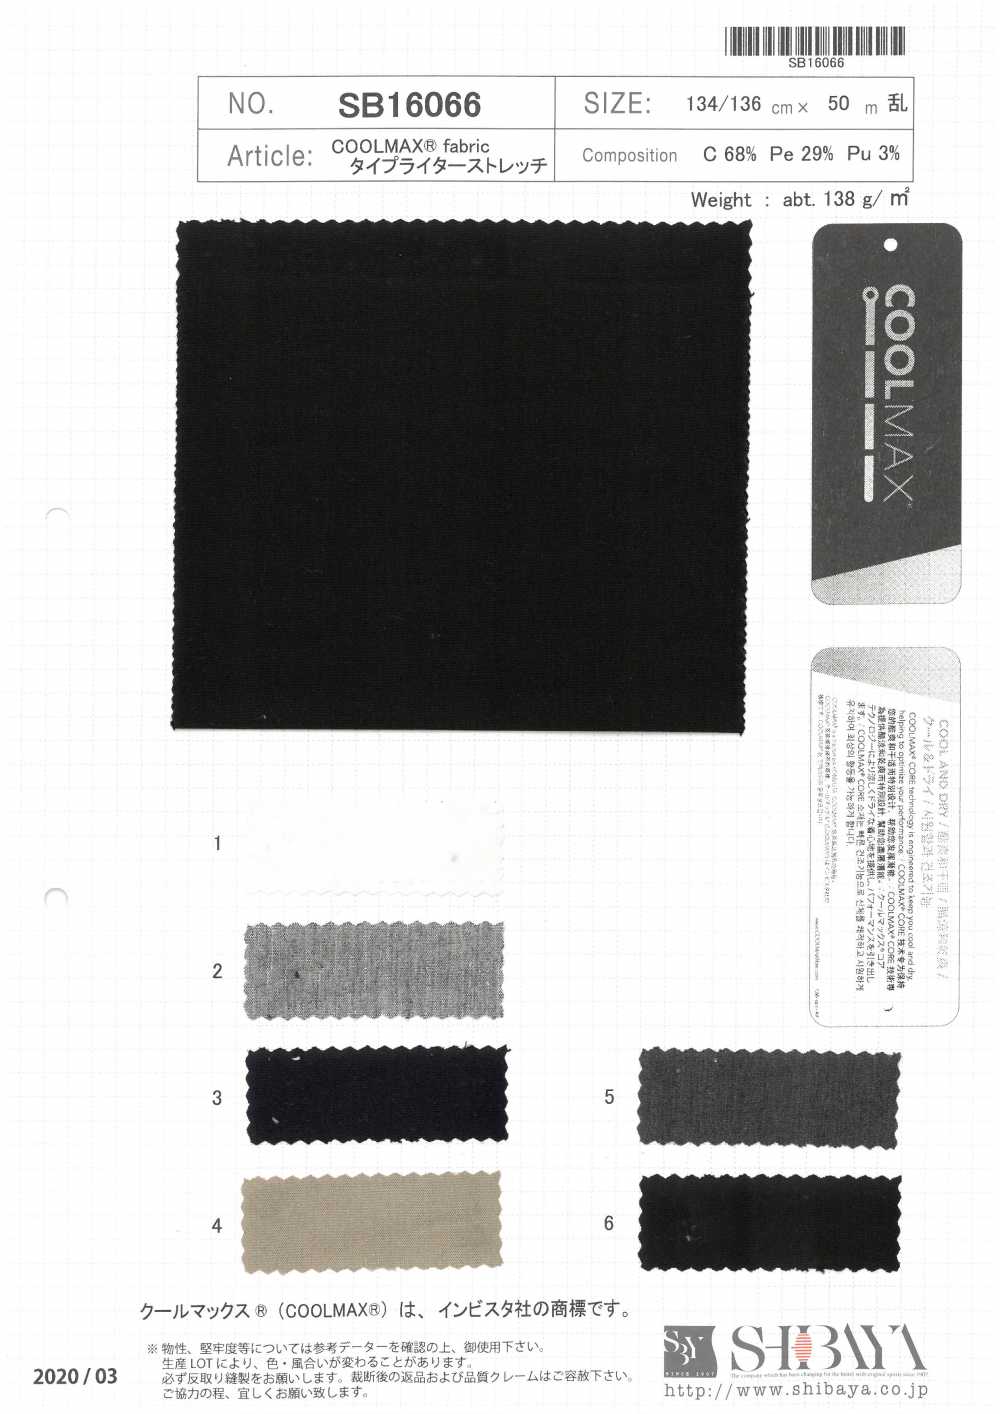 SB16066 COOLMAX® Fabric Typewritter Cloth Stretch[Textile / Fabric] SHIBAYA